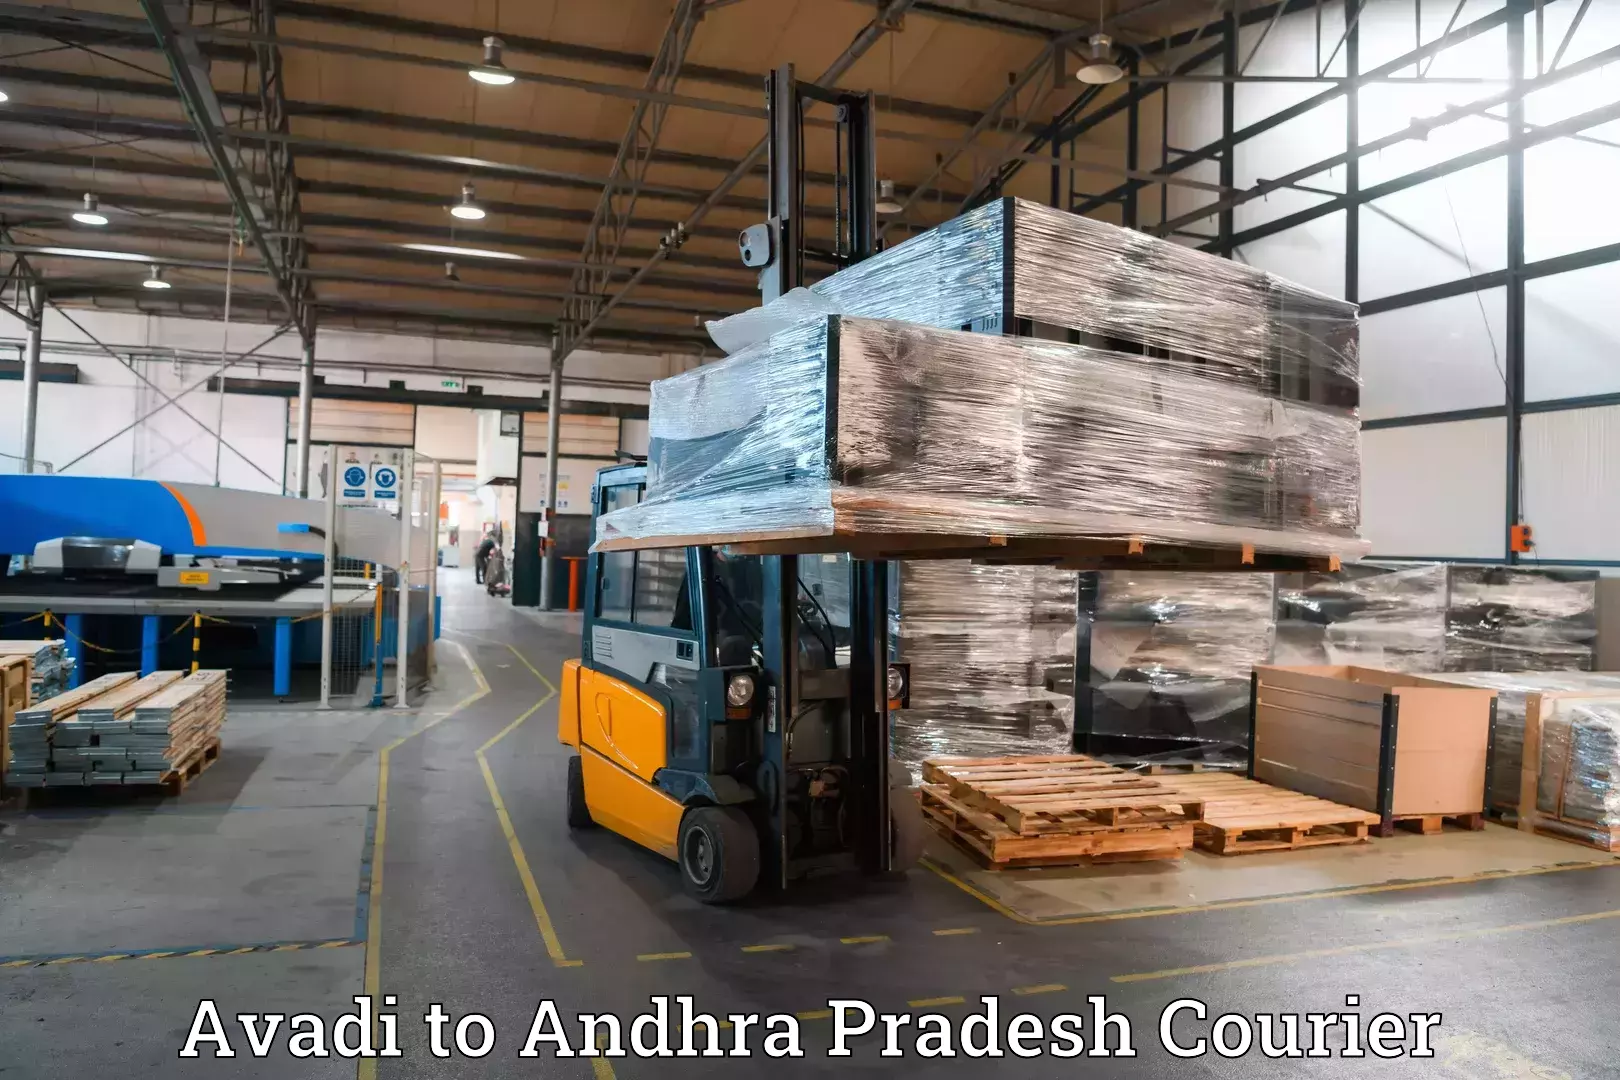 Express baggage shipping in Avadi to Andhra Pradesh